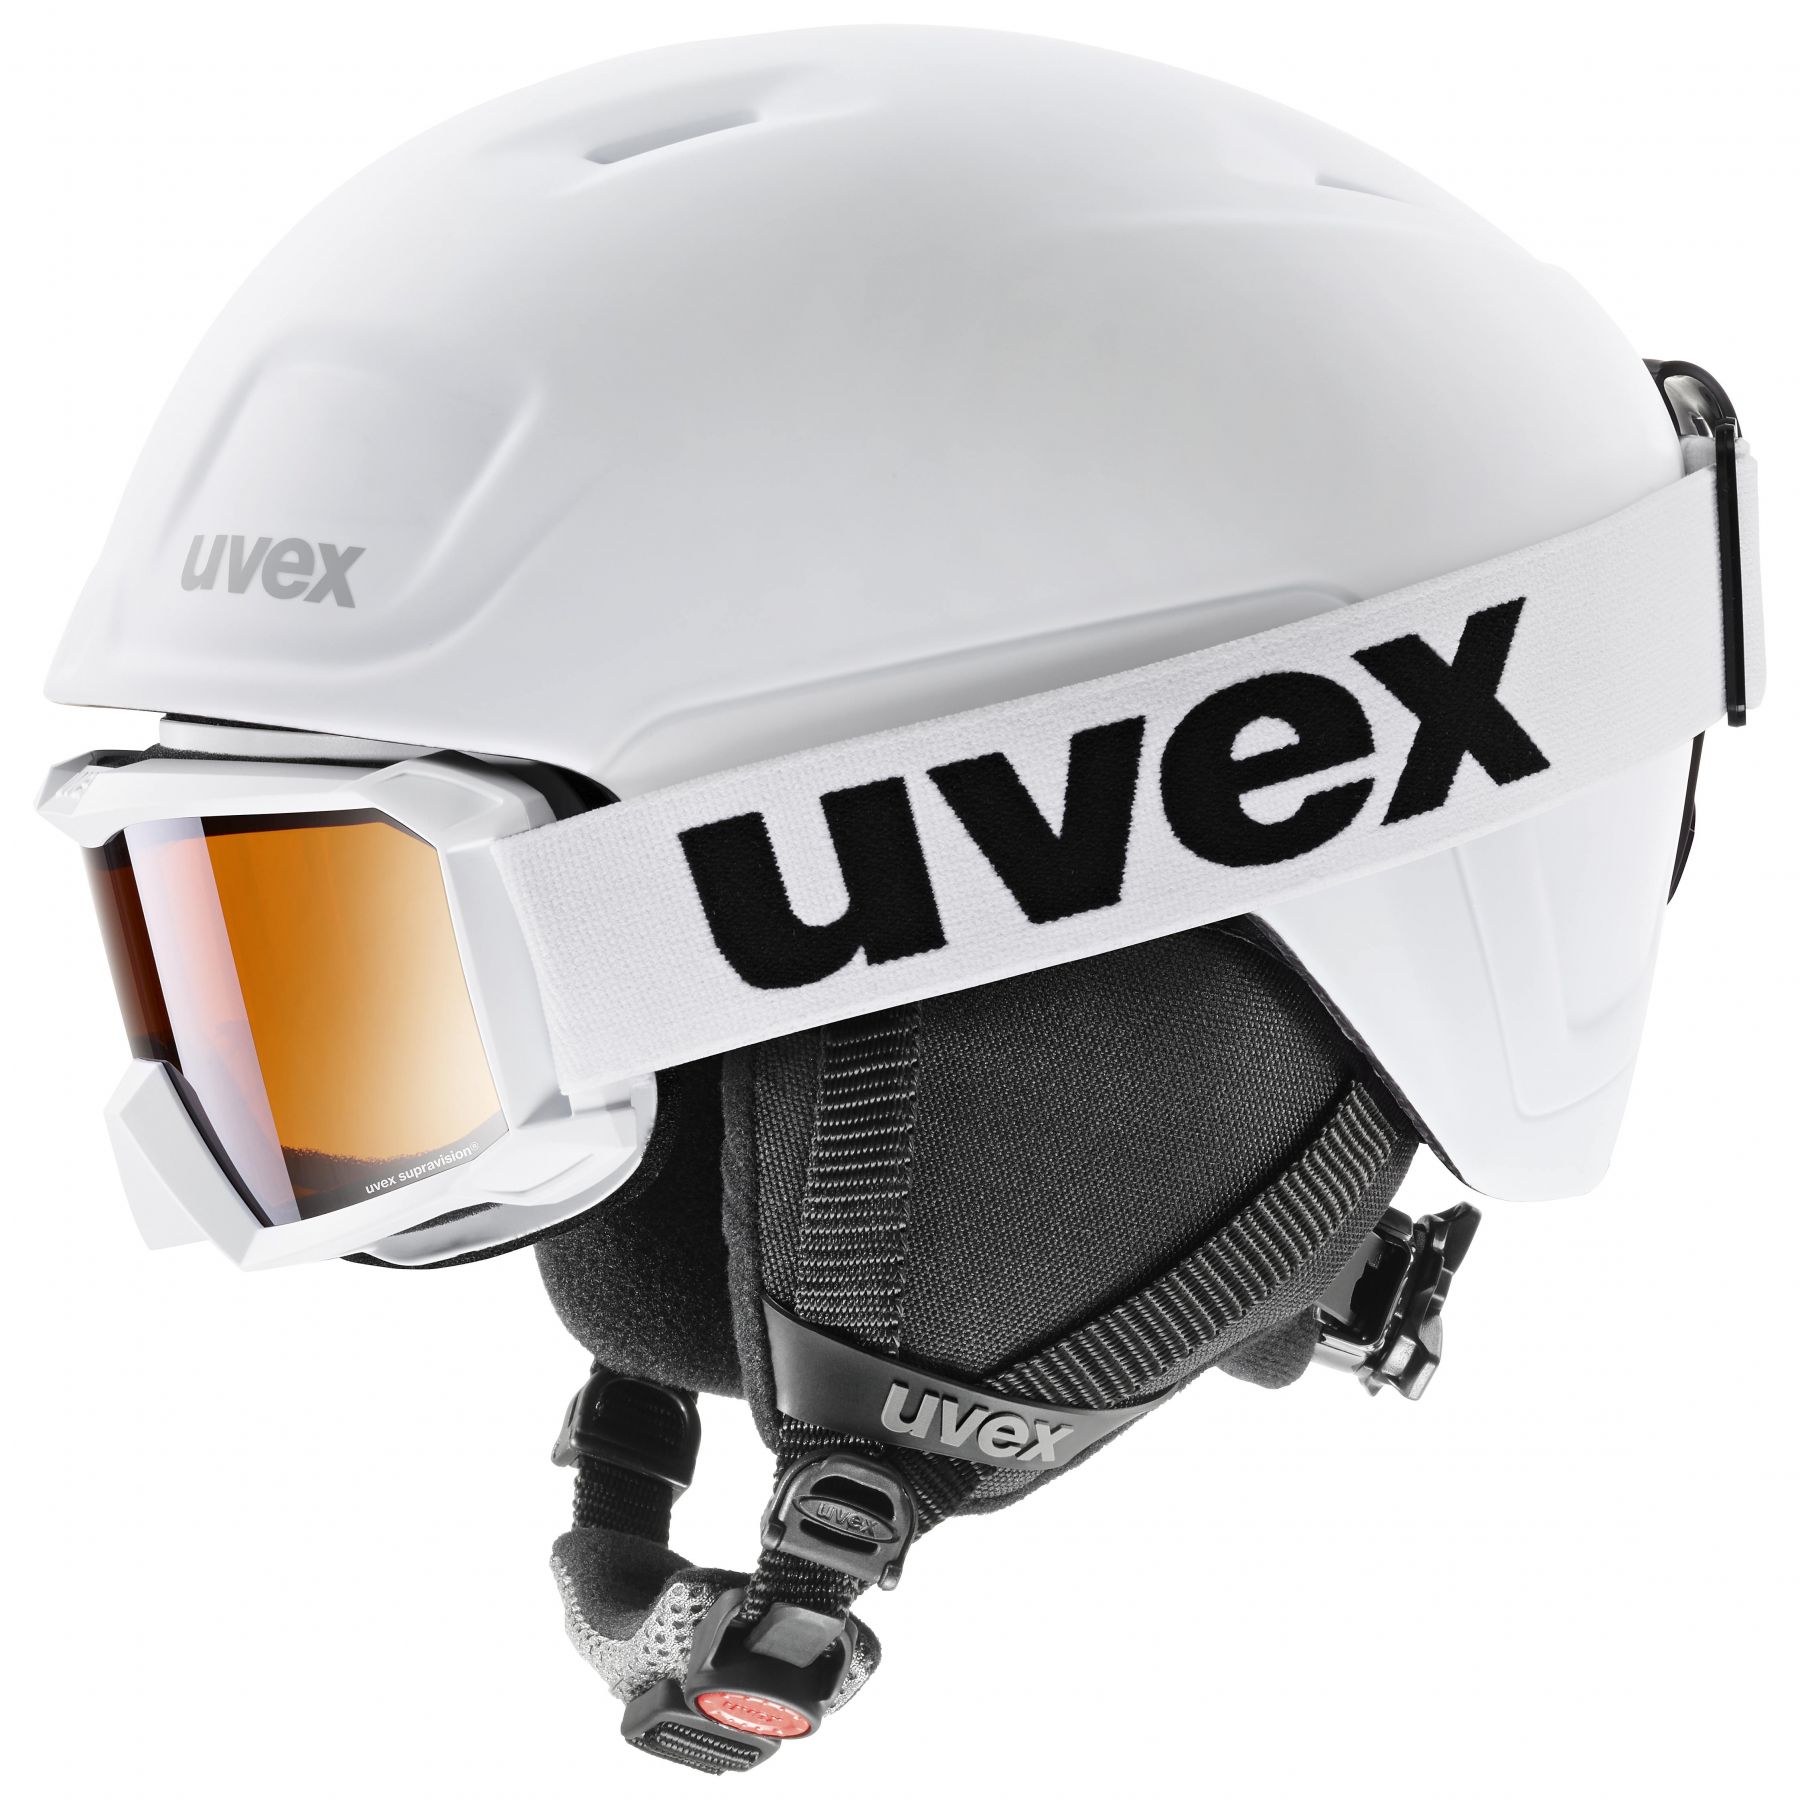 Billede af Uvex Heyya Pro Set, skihjelm + skibrille, junior, hvid hos Skisport.dk